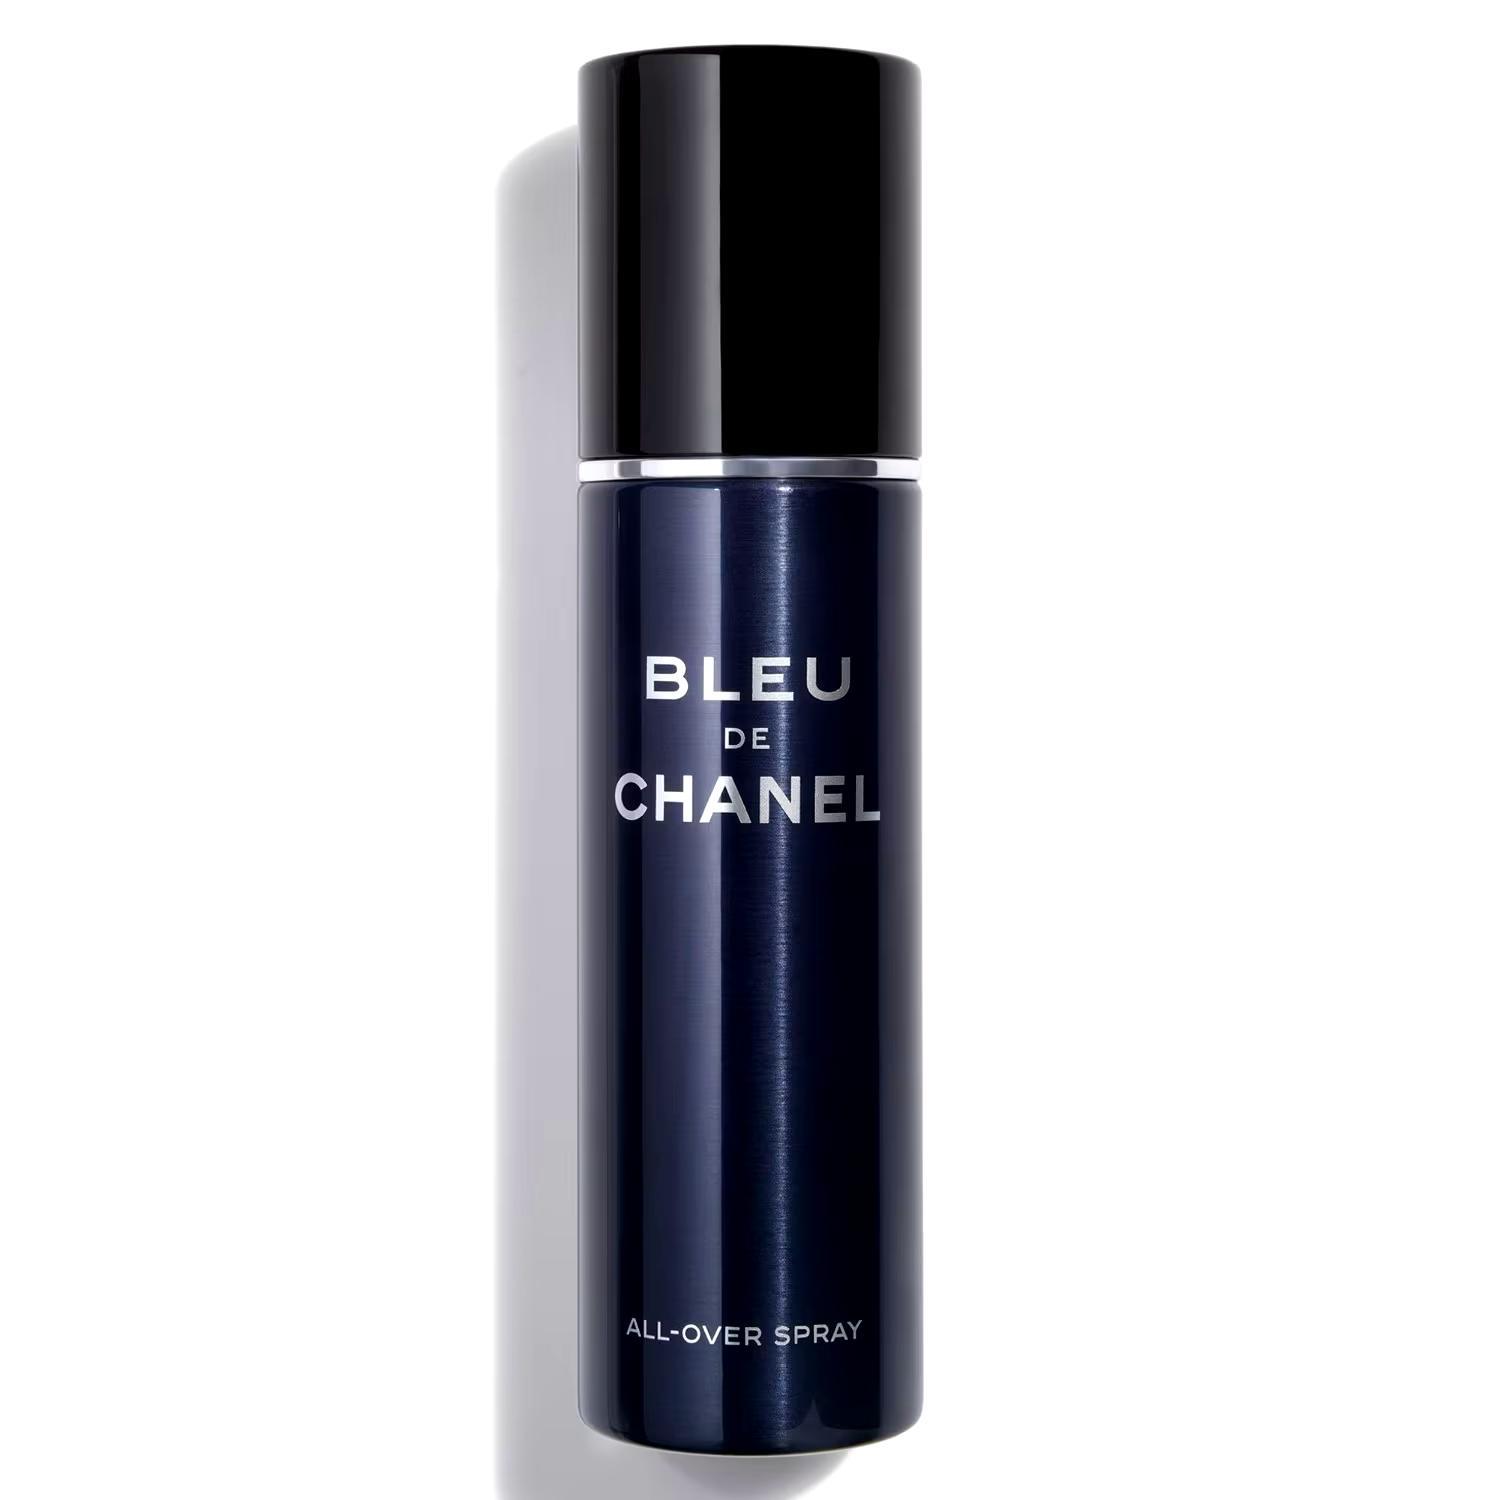 Chanel Bleu de Chanel all-over spray